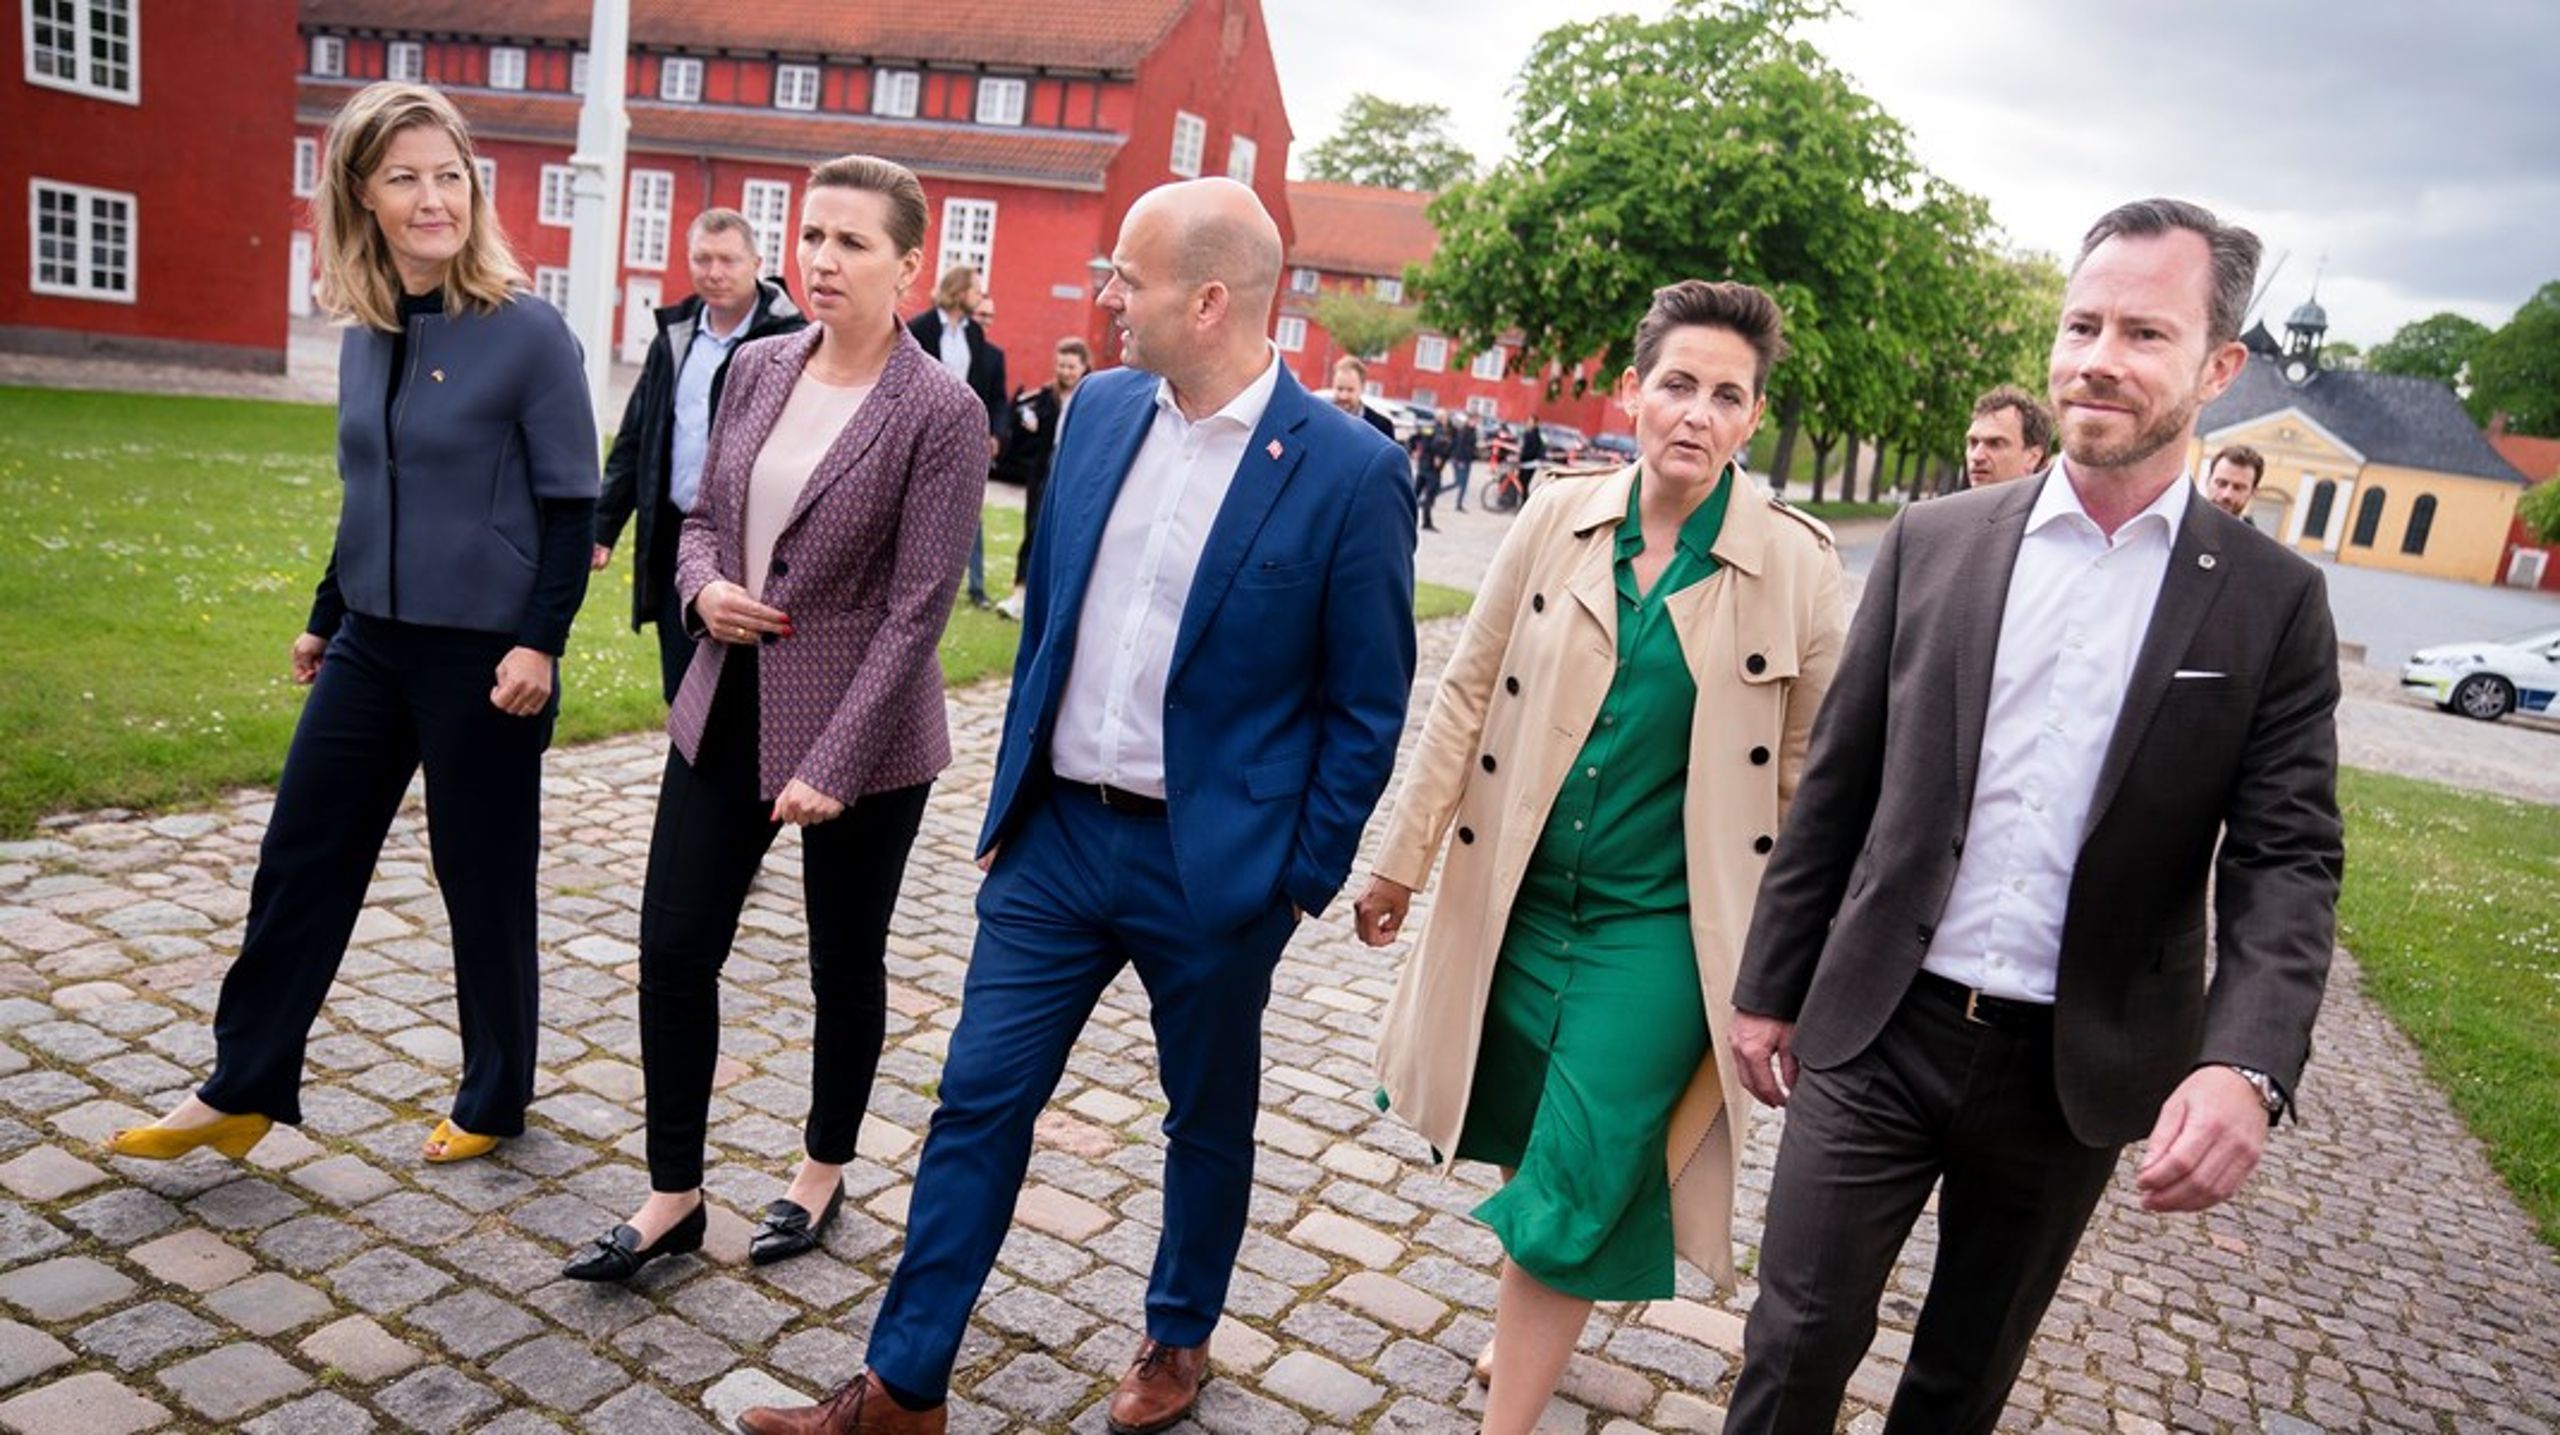 Her ses partilederne bag det nationale kompromis, der forpligter Danmark til at bruge to procent af BNP på forsvaret. Selv samme politikere skal snart foretage en række afgørende politiske valg for, hvordan dansk forsvar skal opbygges, skriver Hans Peter Michaelsen.